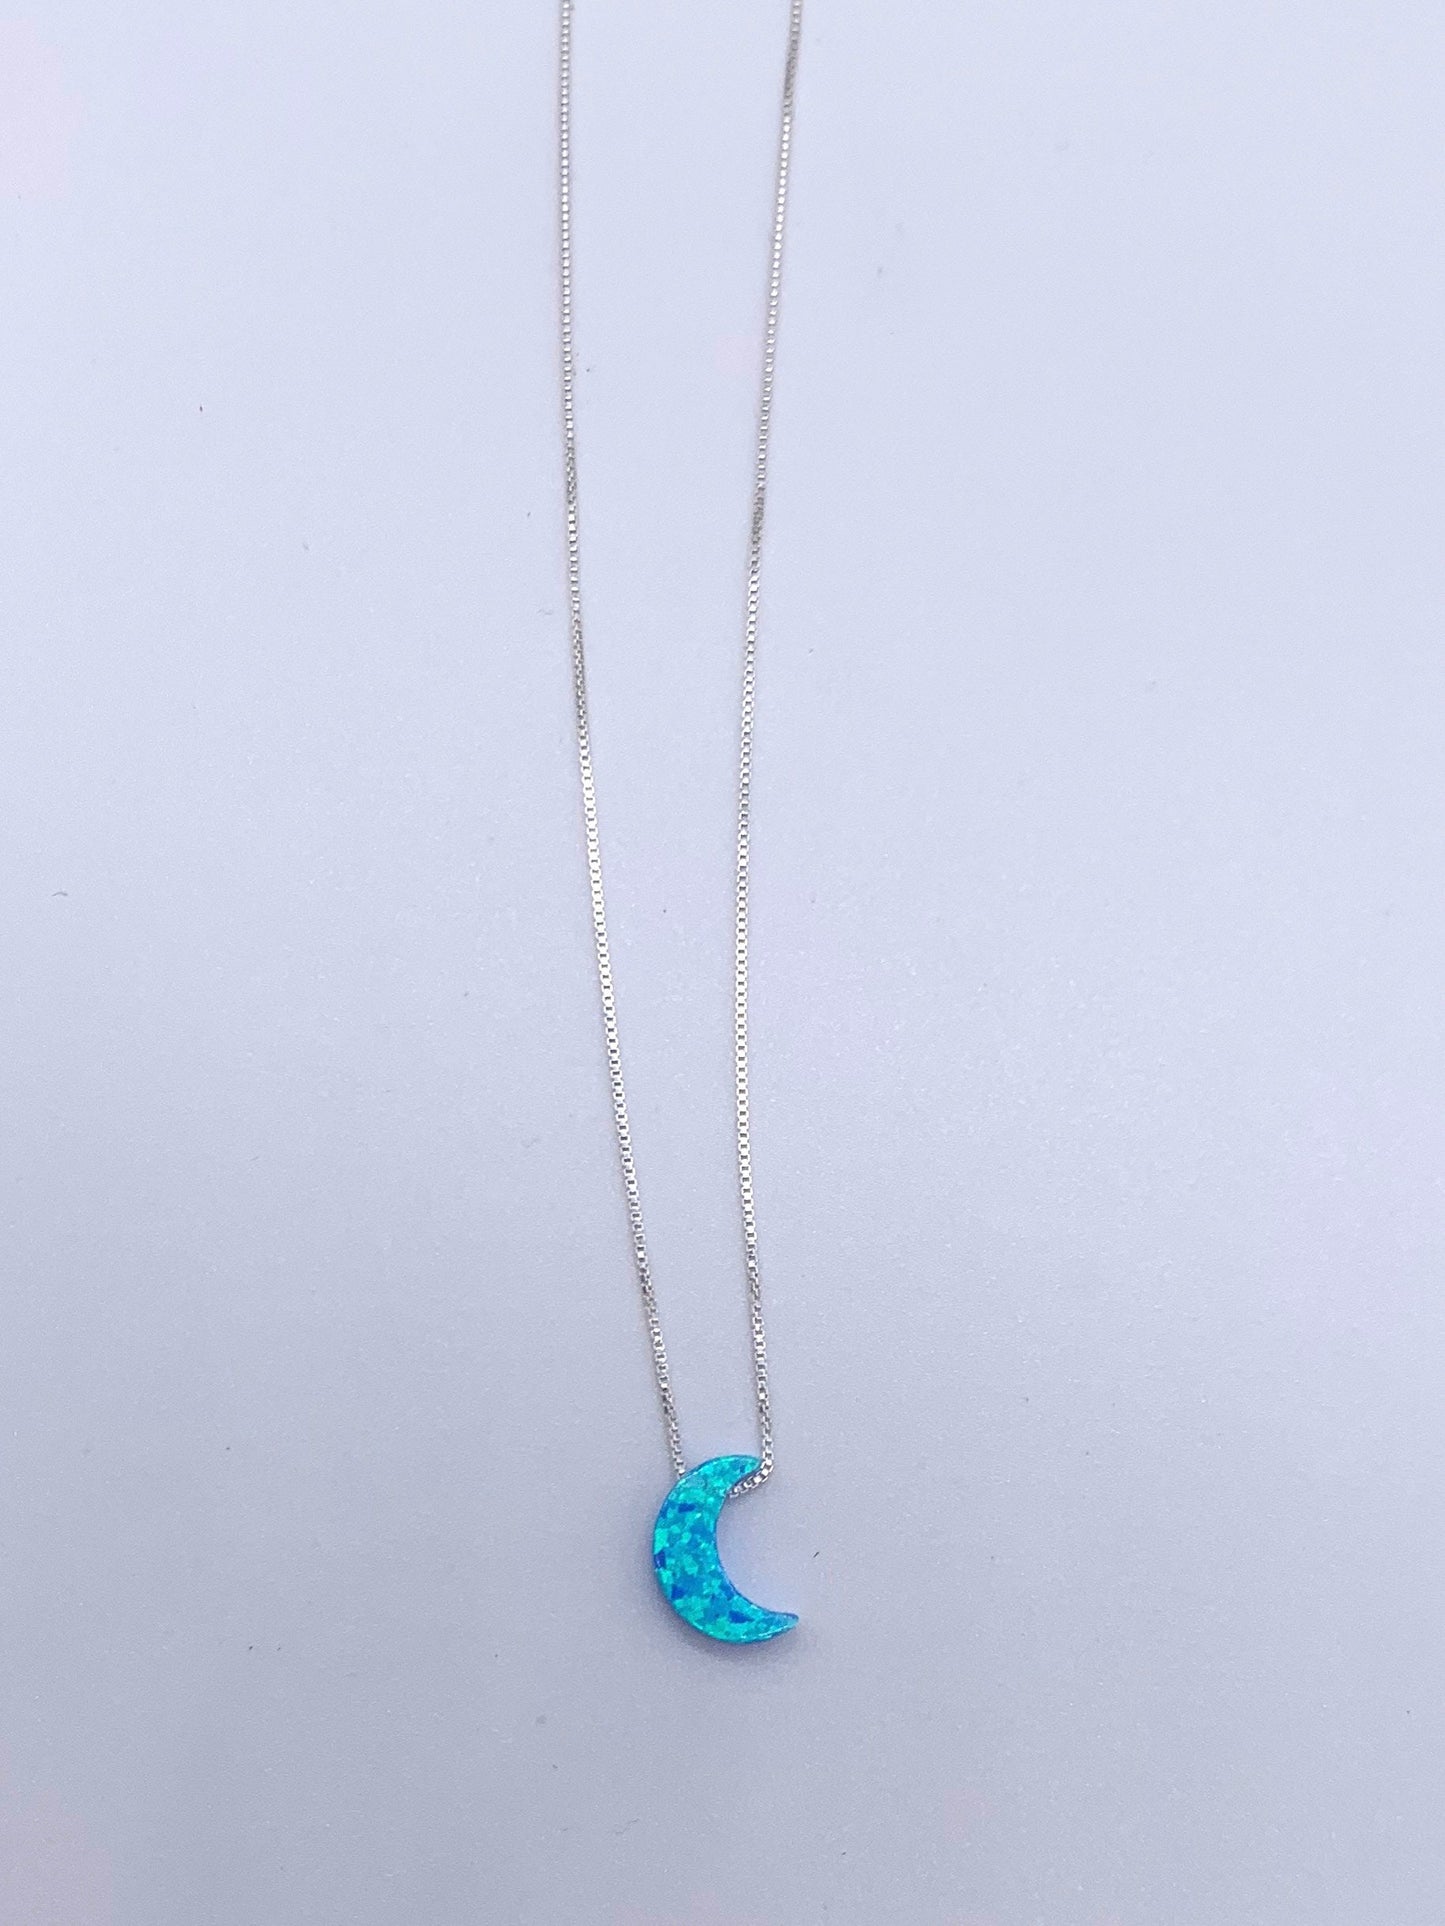 moon necklace fire opal sterling silver in light blue